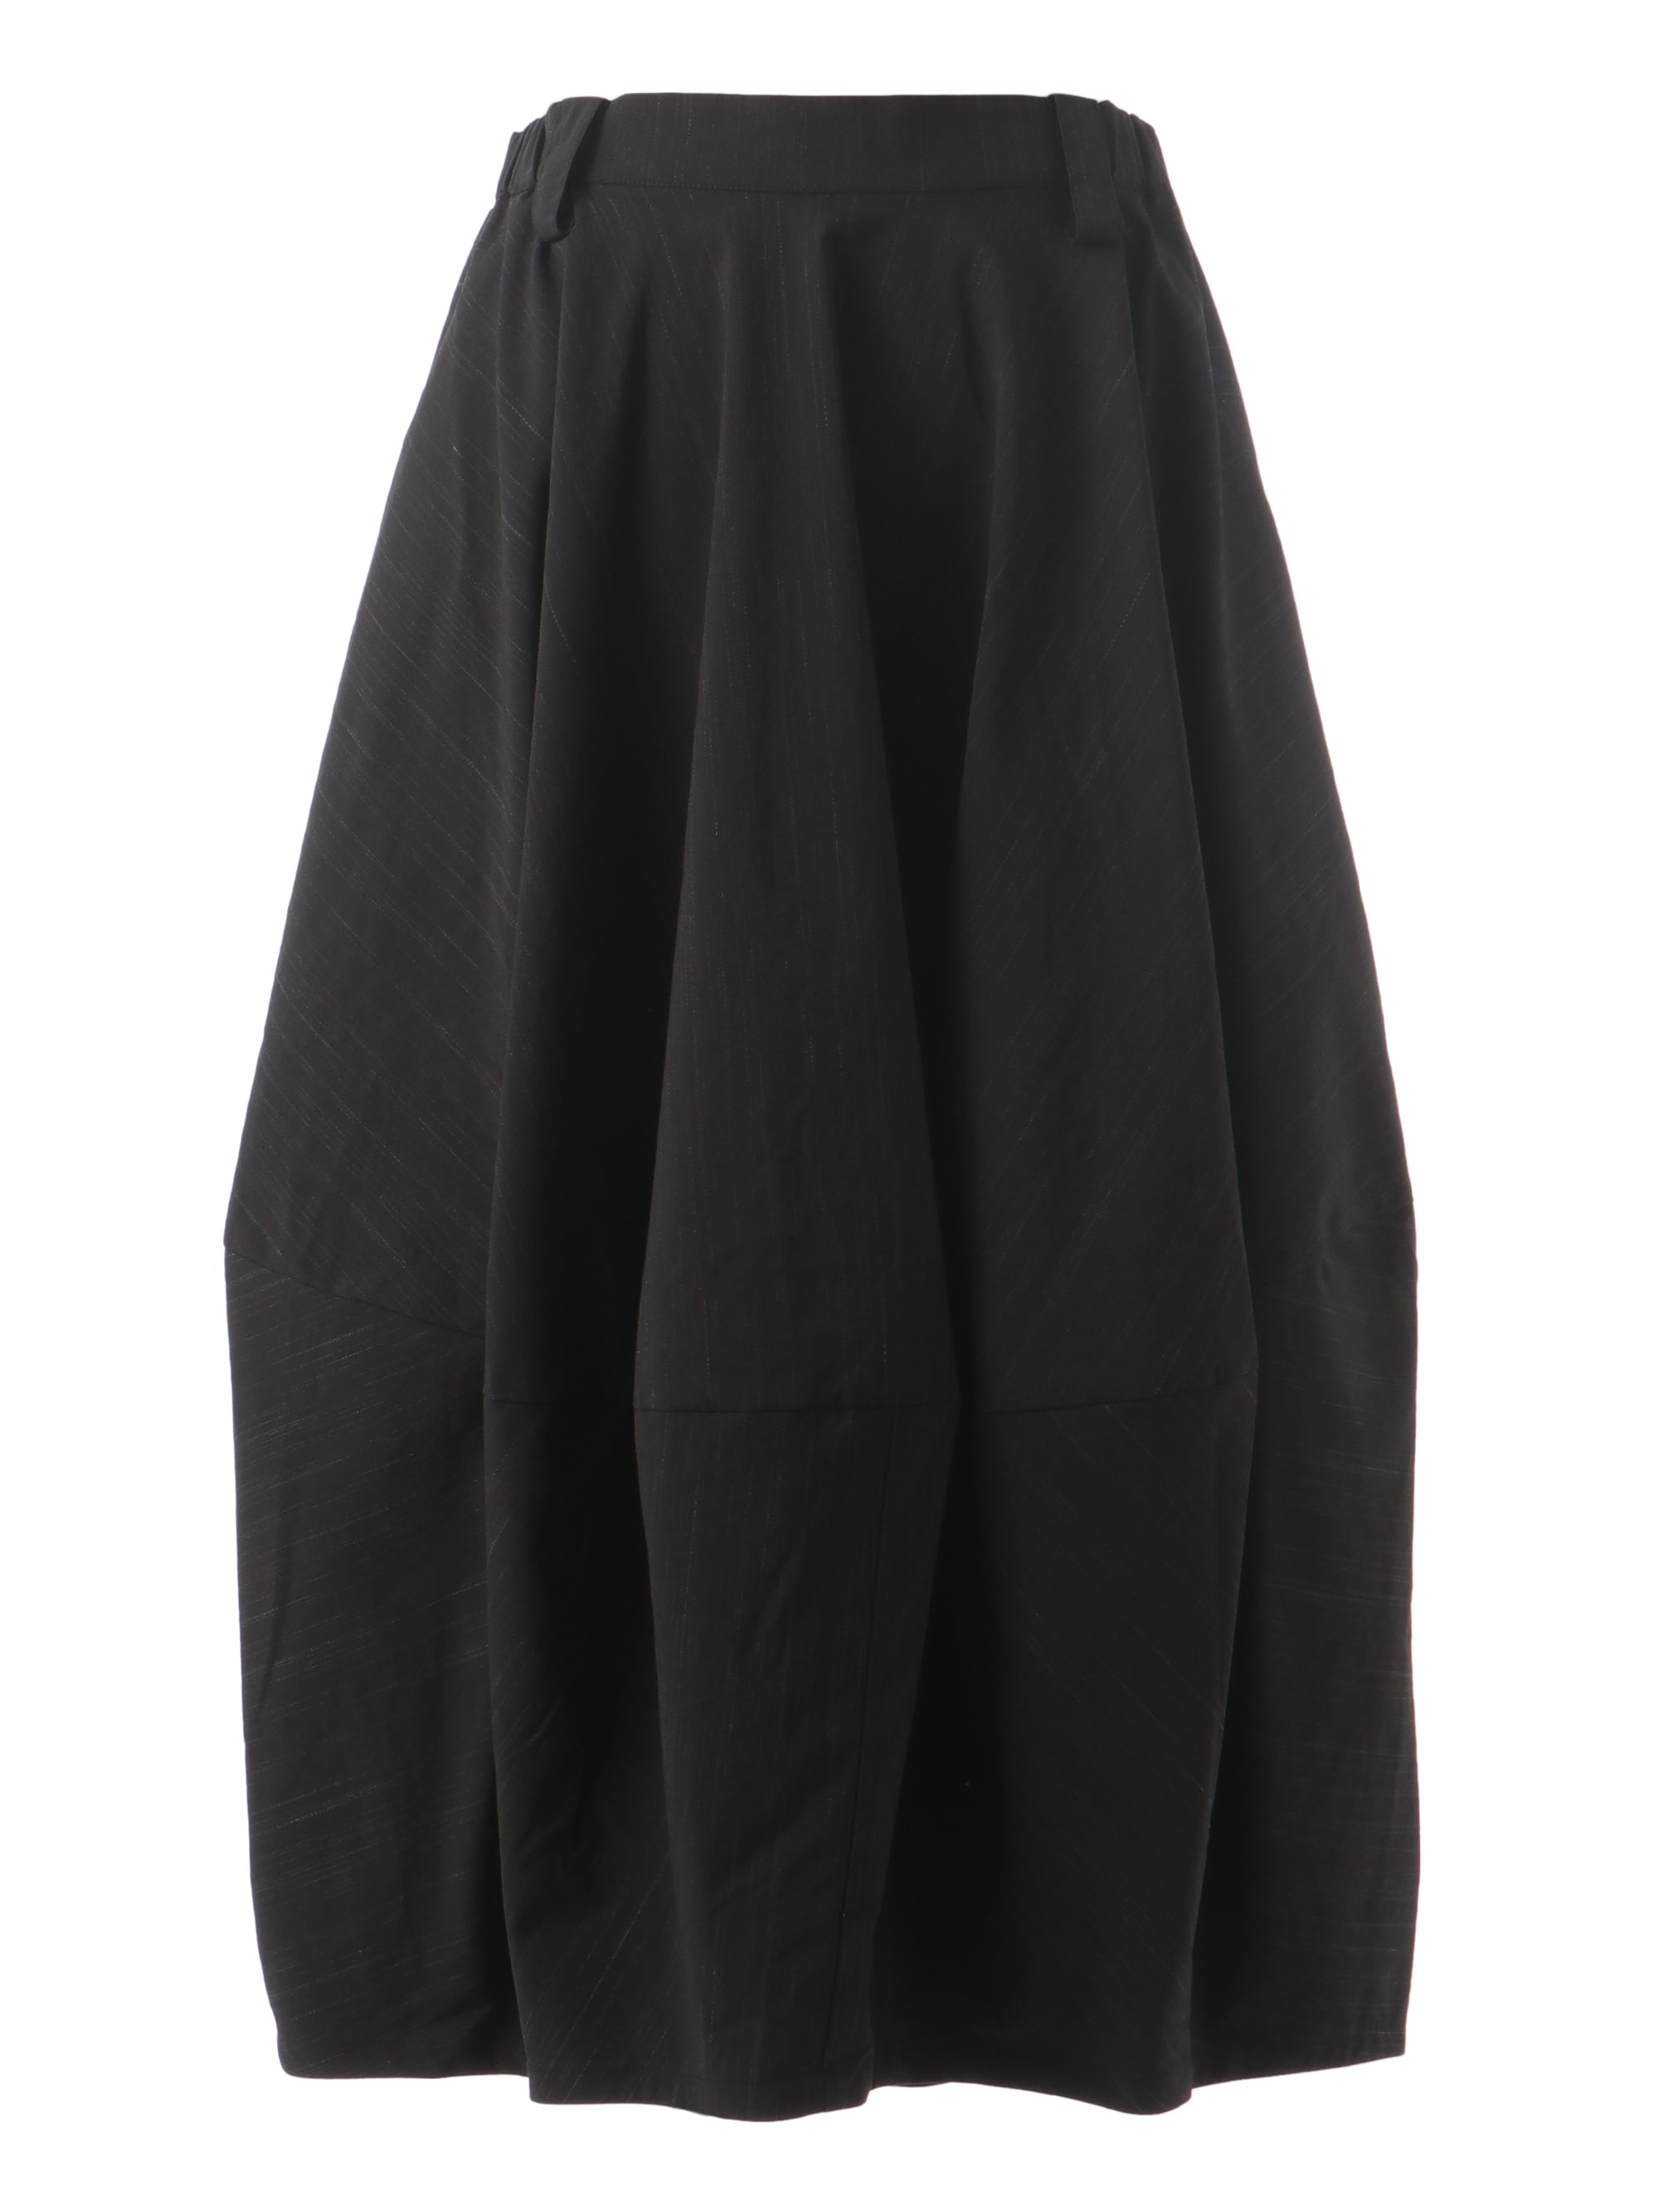 t.b センソユニコ マツオインターナショナル バルーンスカート - スカート